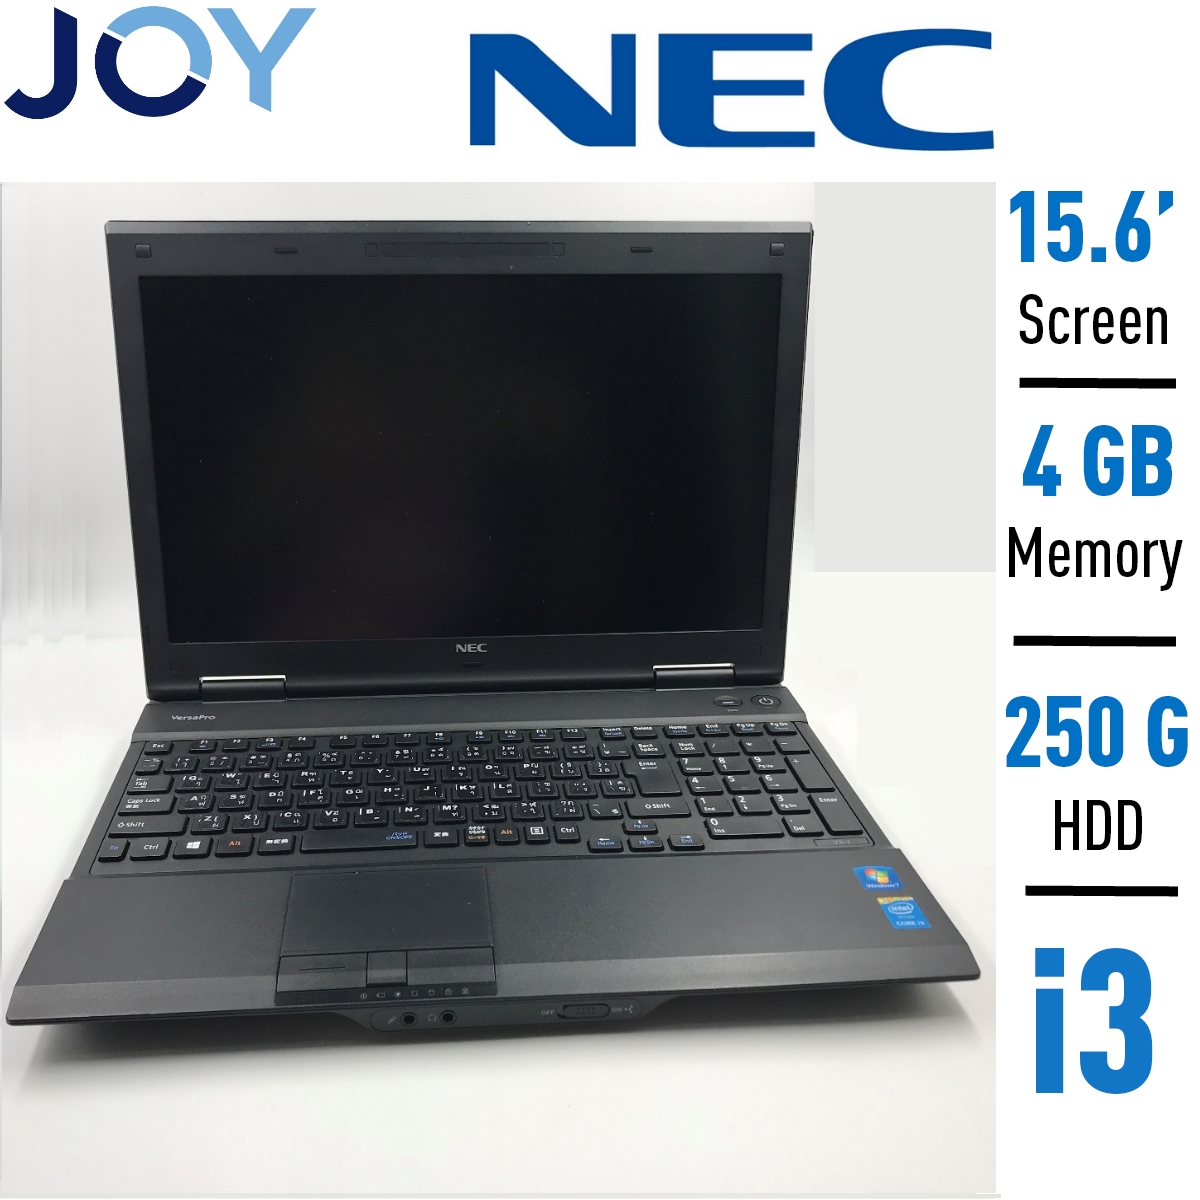 โน๊ตบุ๊คมือสอง NEC i3 gen 4 15.6 นิ้ว Notebook ราคาถูกๆ โน๊ตบุ๊ค laptop มือสอง โน็ตบุ๊คมือ2 โน้ตบุ๊คถูกๆ โน๊ตบุ๊คมือสอง2 โน๊ตบุ๊คมือสอง i3/i5/i7